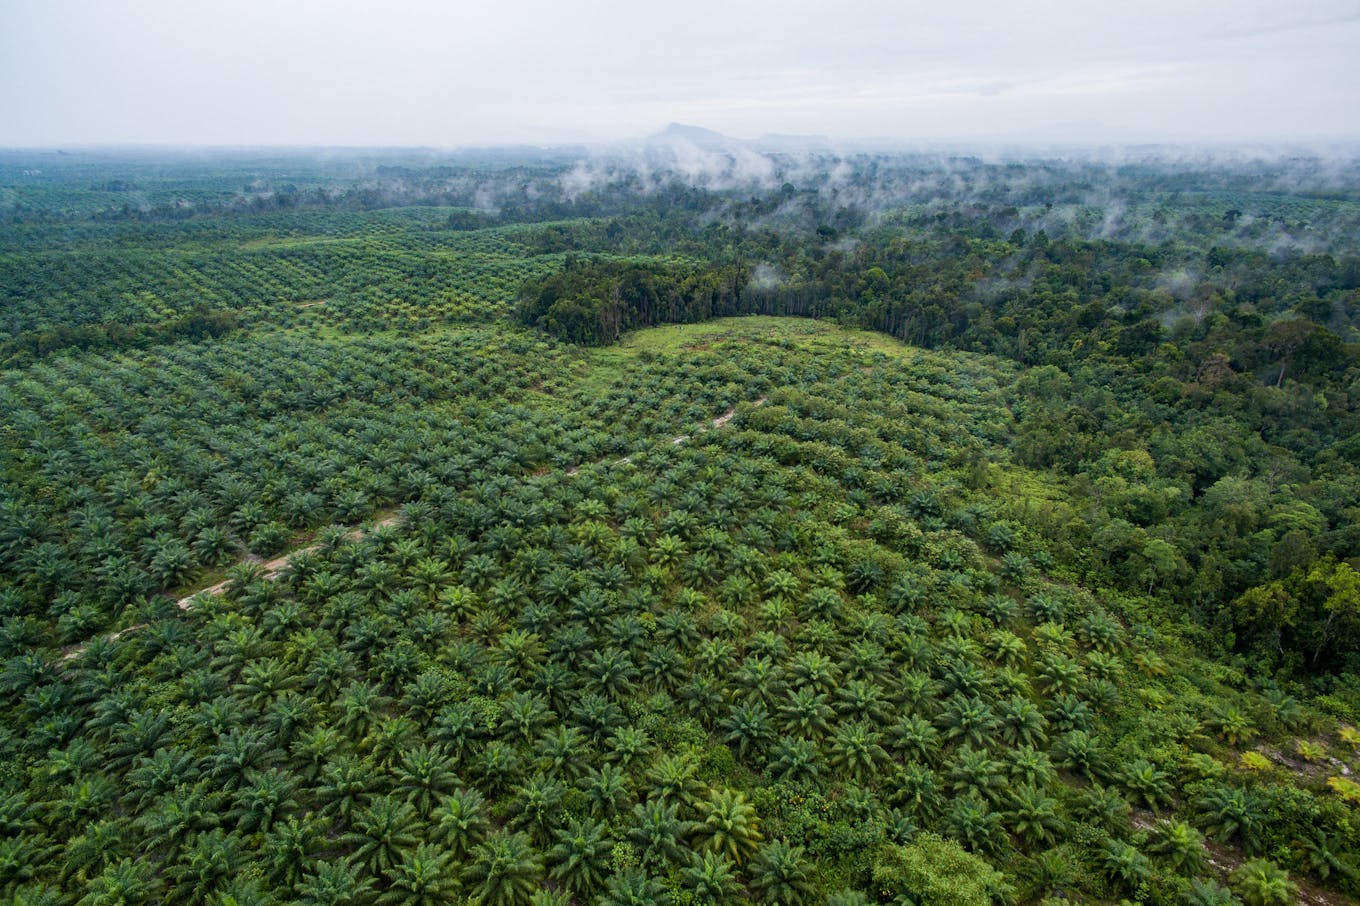 West Kalimantan palm oil plantations